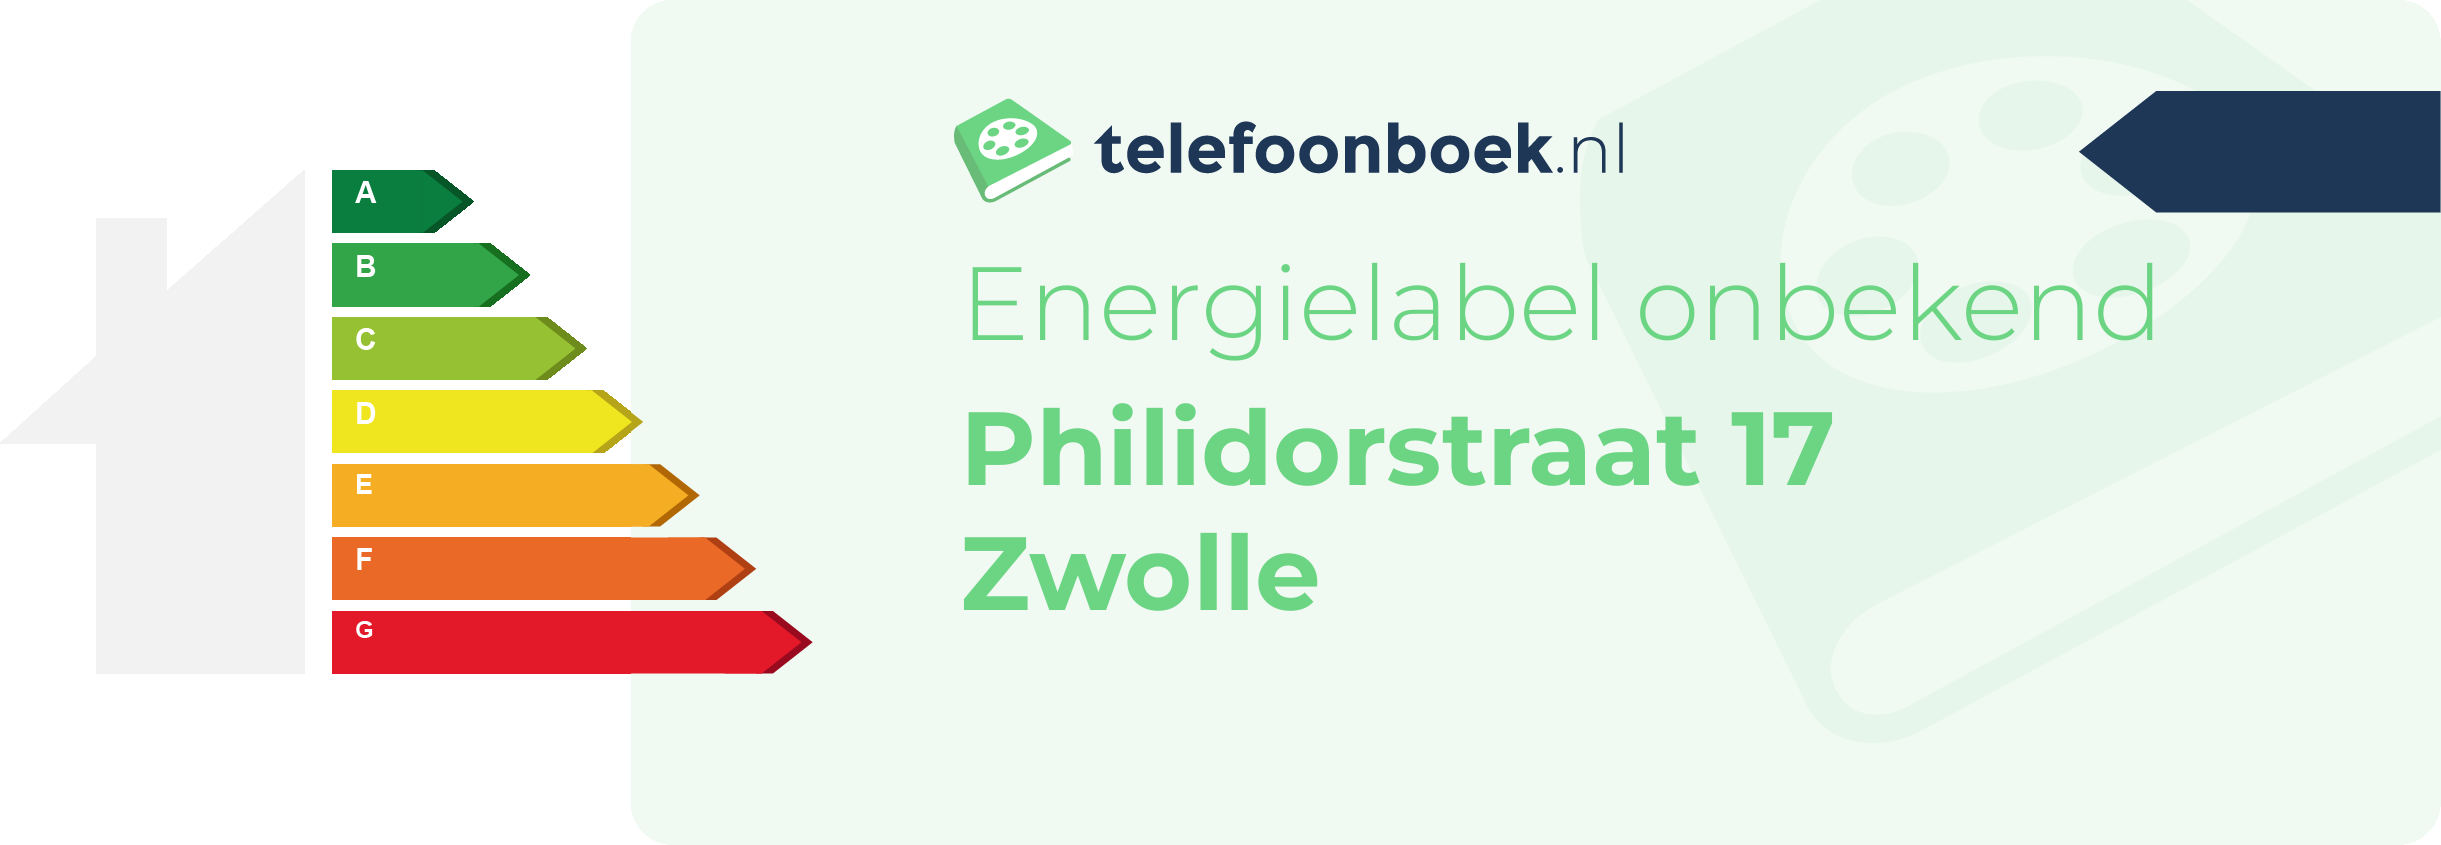 Energielabel Philidorstraat 17 Zwolle